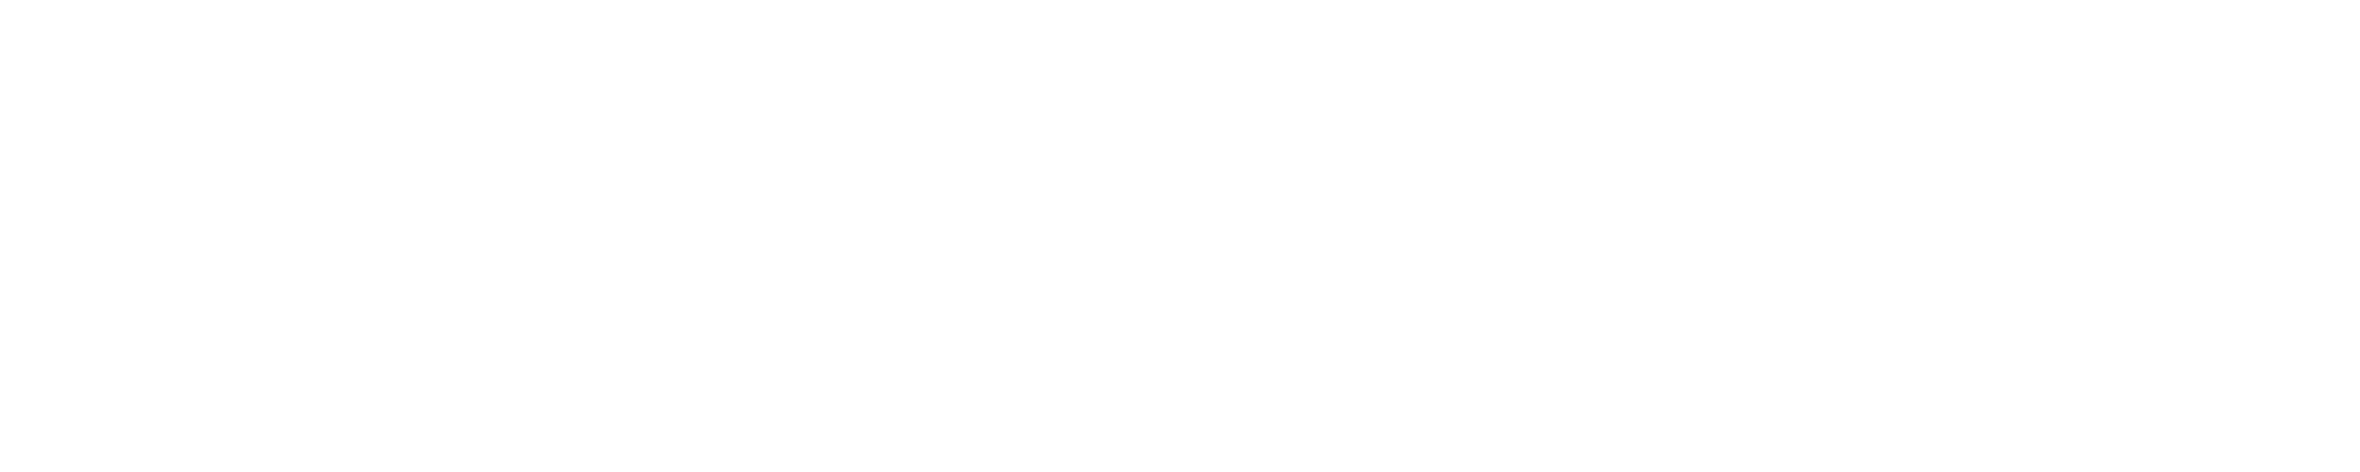 イオンモールは、日本最大級のキッズ・スケートボードコンテスト「Flake Cup」を応援しています。